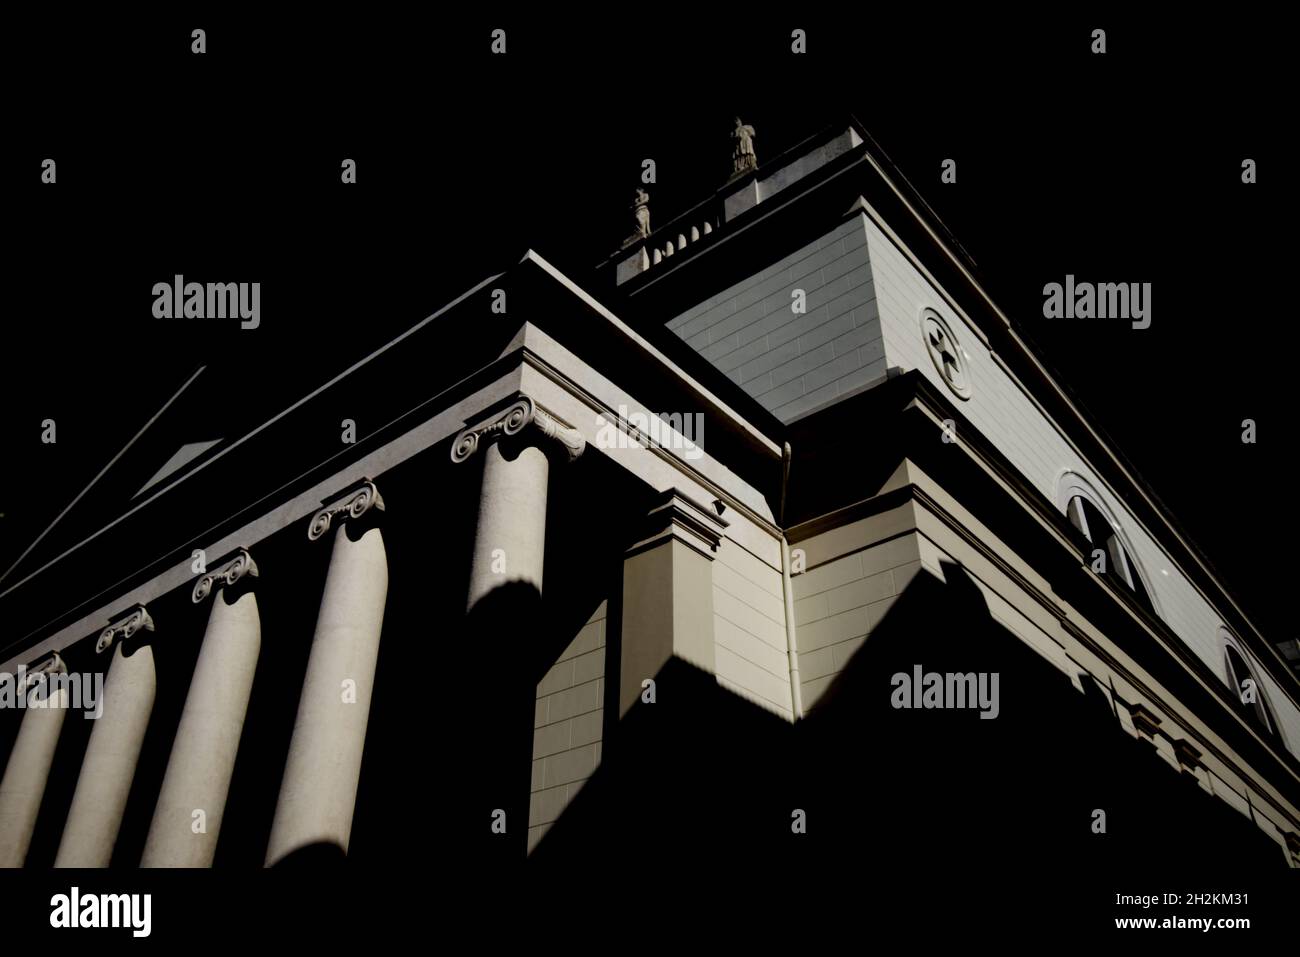 Piazza Sant Antonio, Chiesa Di San Antonio, Trieste, Italy - architecture historic building Stock Photo